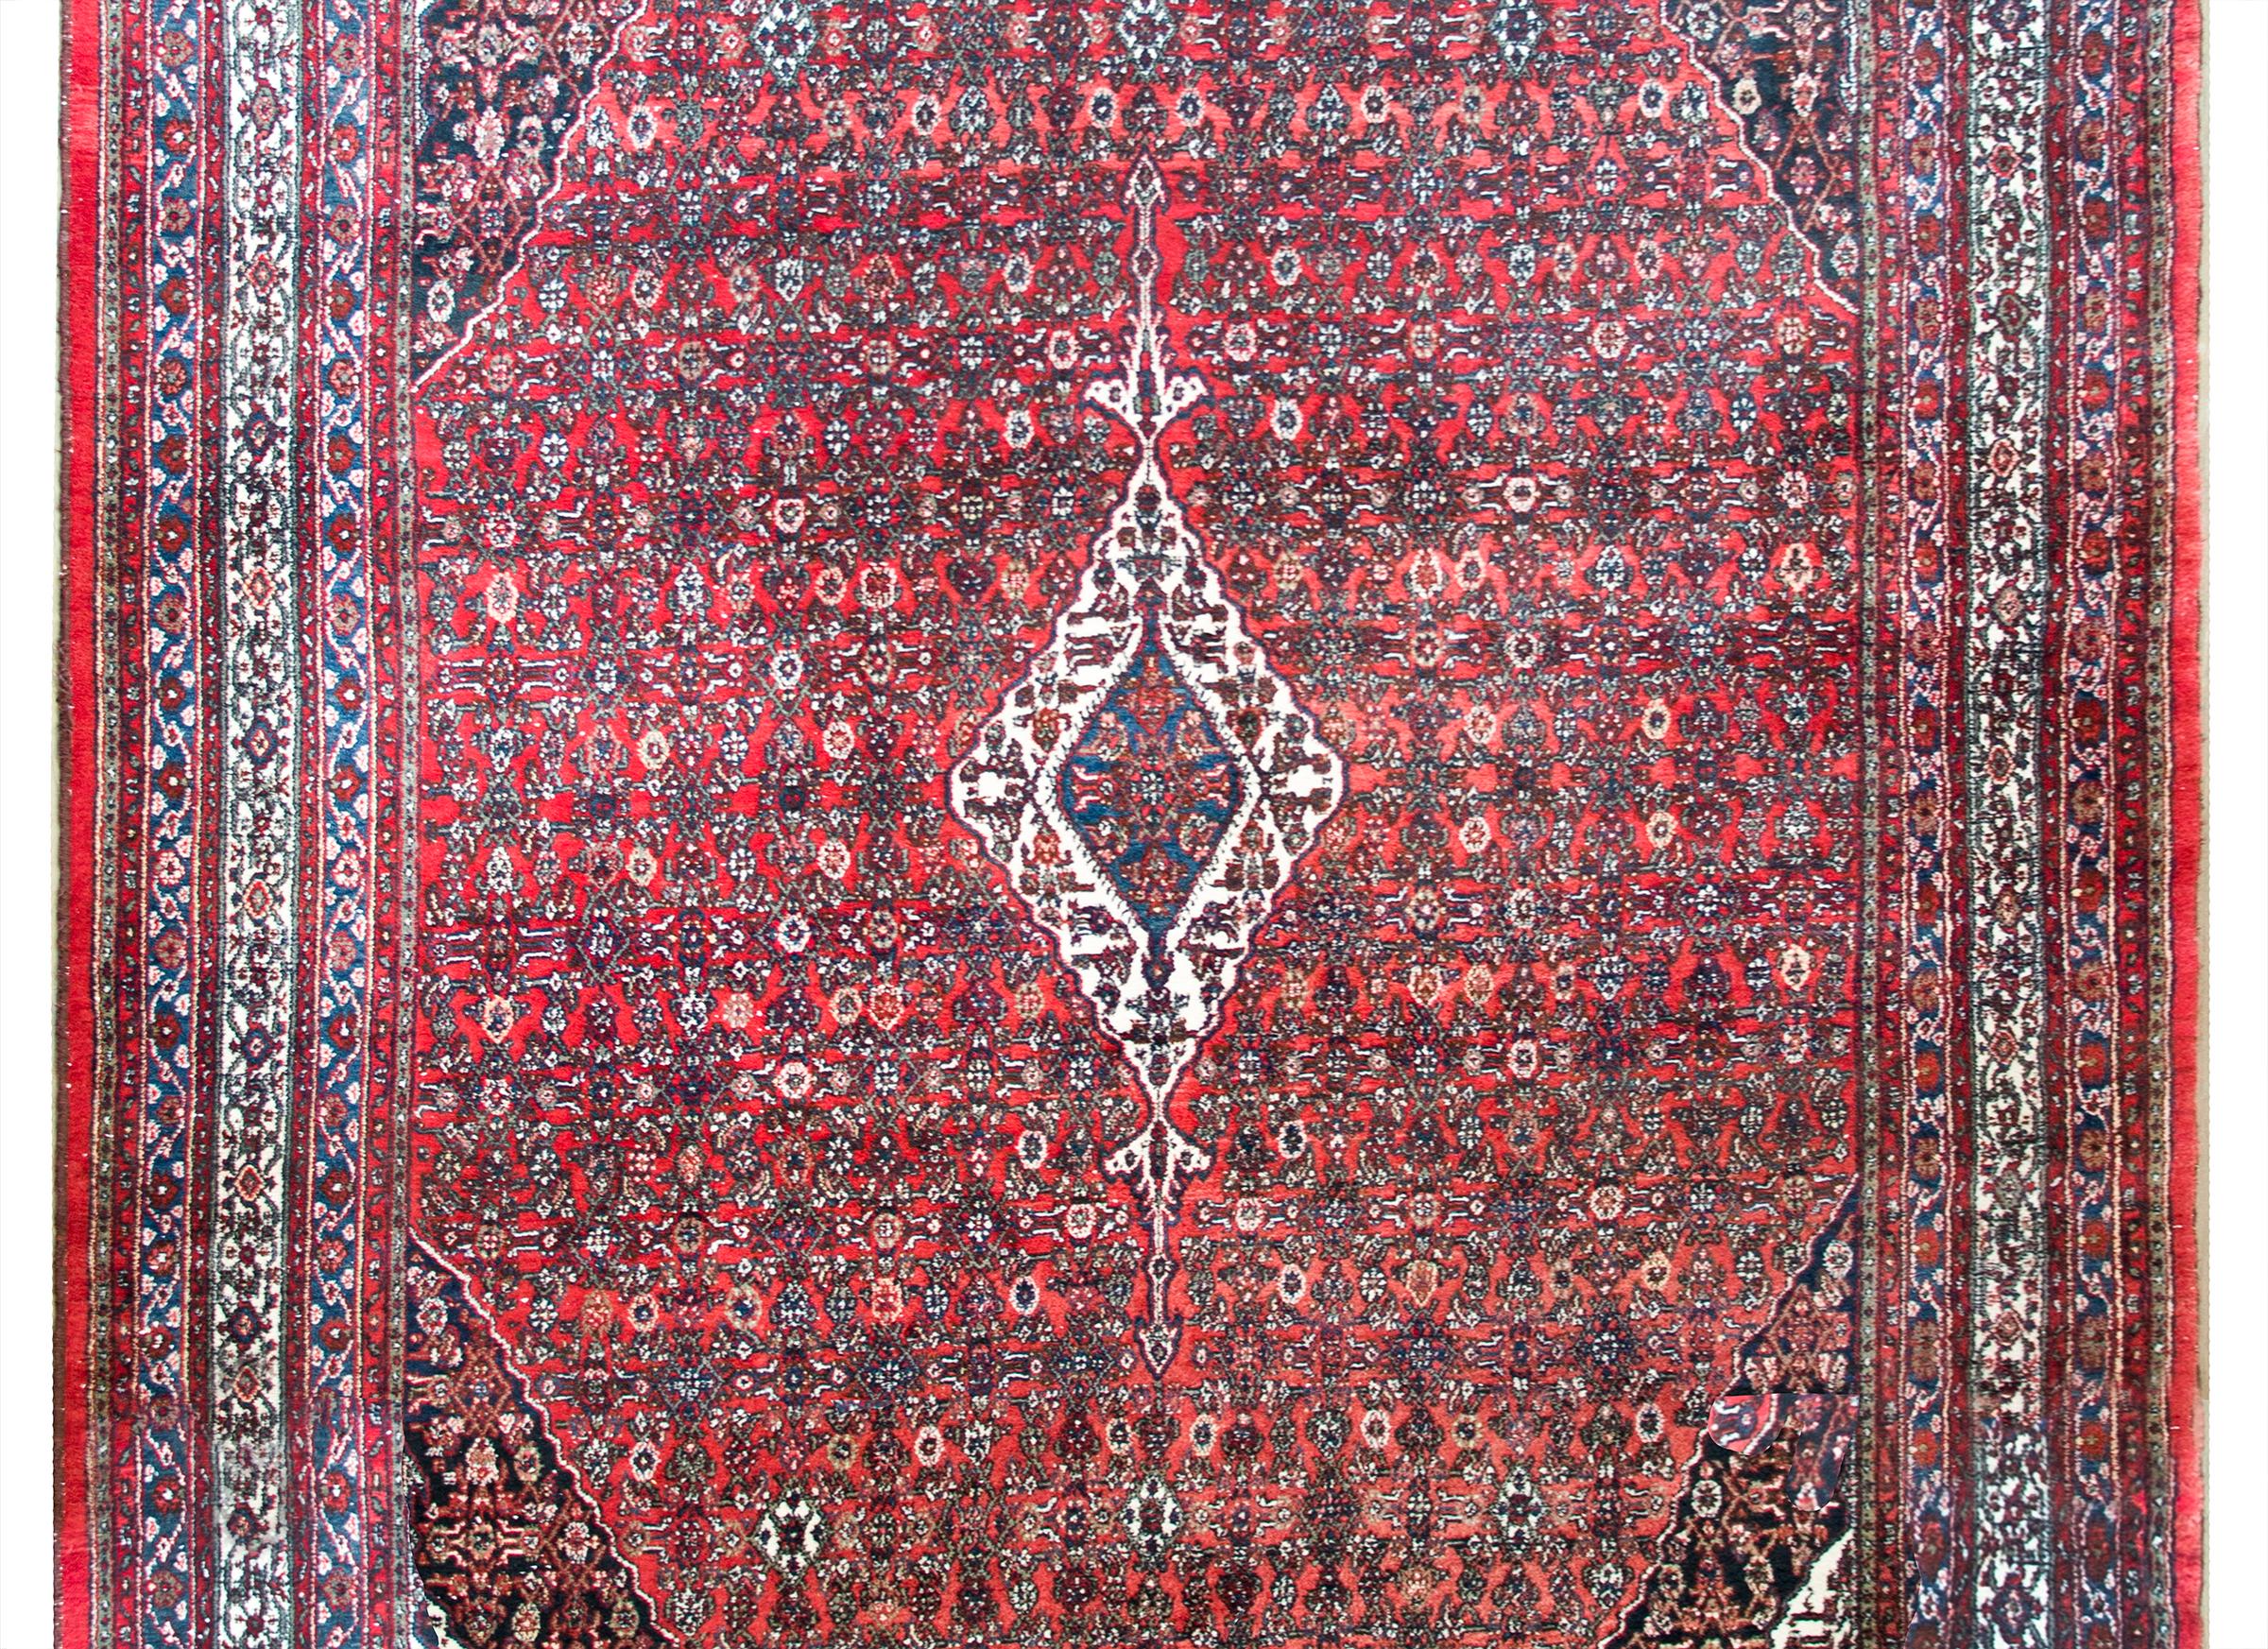 Ein schöner persischer Bibikibad-Teppich aus dem frühen 20. Jahrhundert mit einem floralen Spaliermuster mit einem kleinen weißen Rautenmedaillon in der Mitte und einer breiten Bordüre, die aus mehreren dünnen, floral gemusterten Streifen besteht.